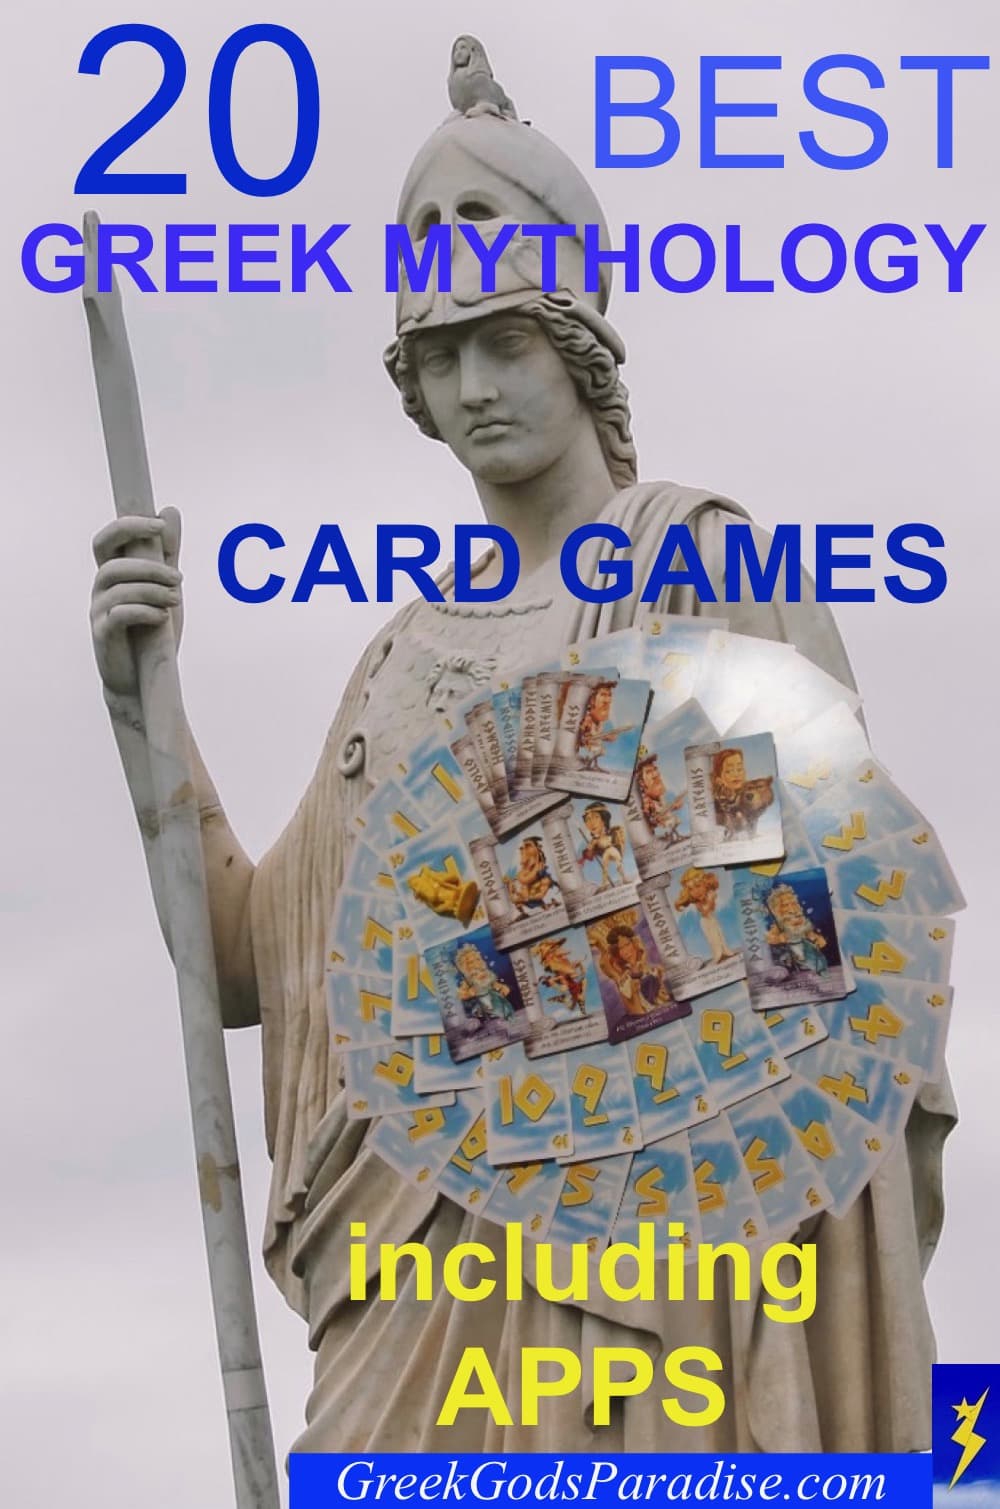 Best Greek Mythology Card Games and Apps